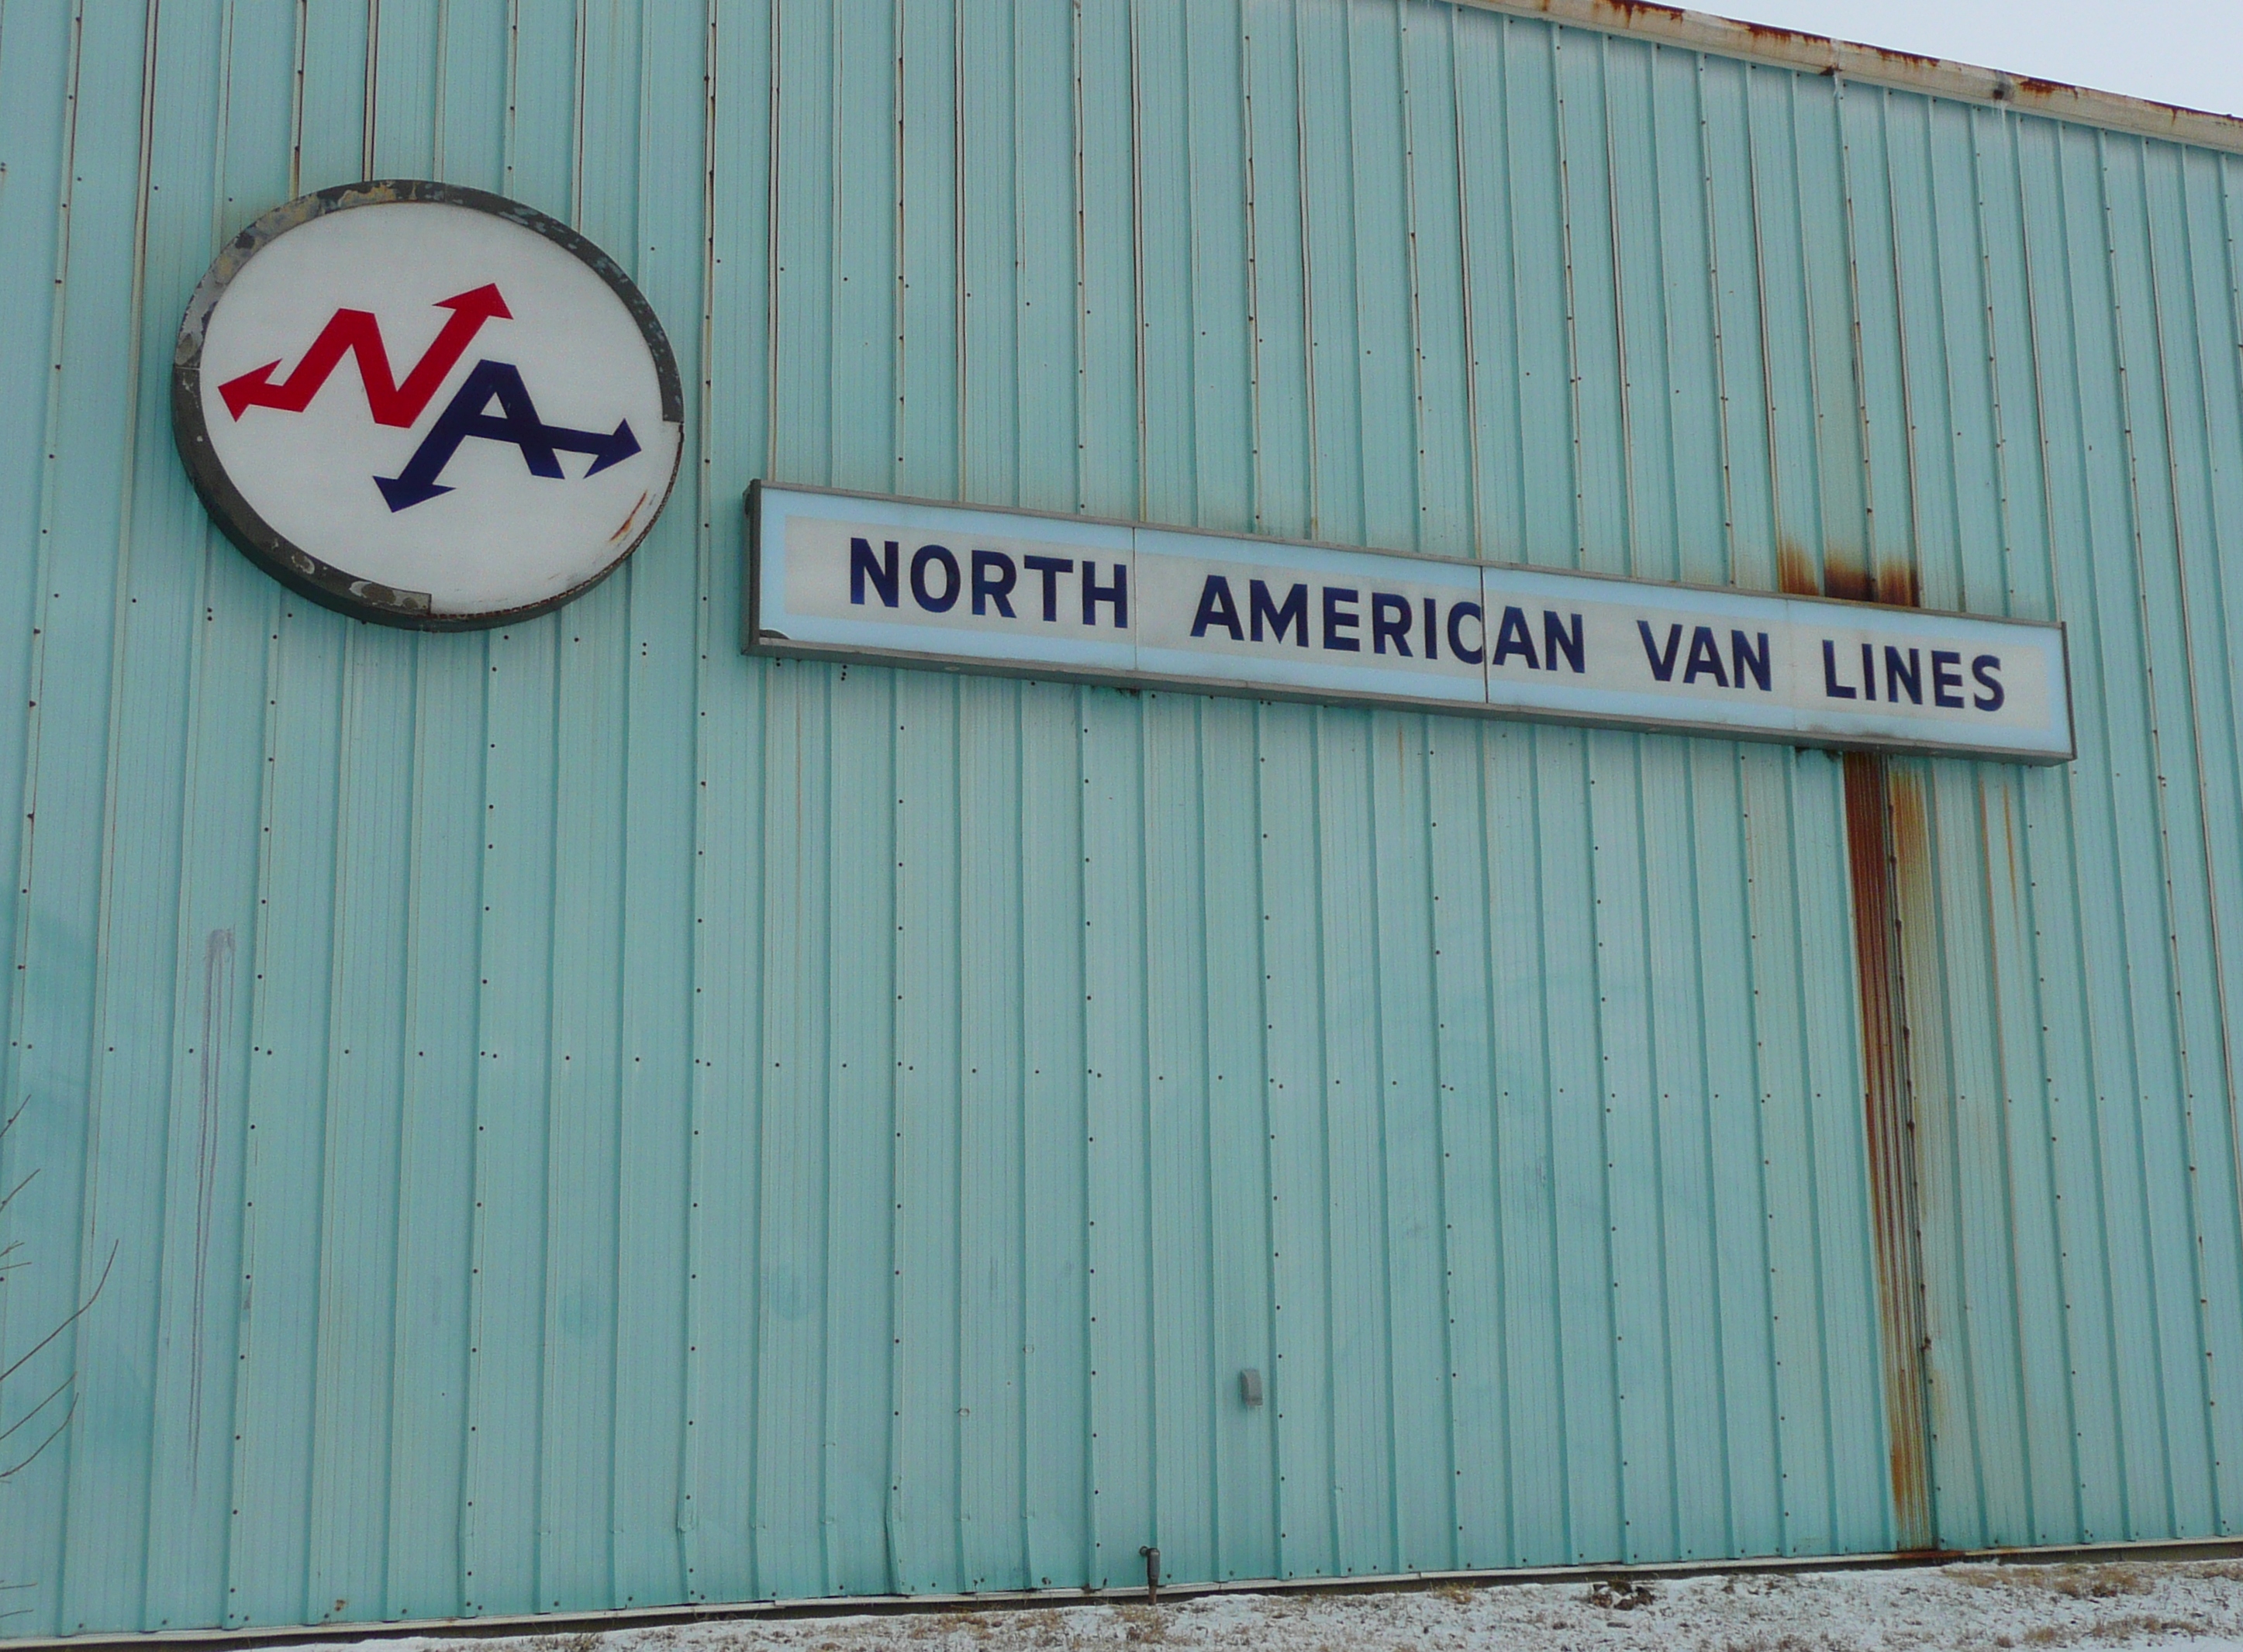 North American Van Lines - Rantoul, Illinois U.S.A. - January 26, 2009